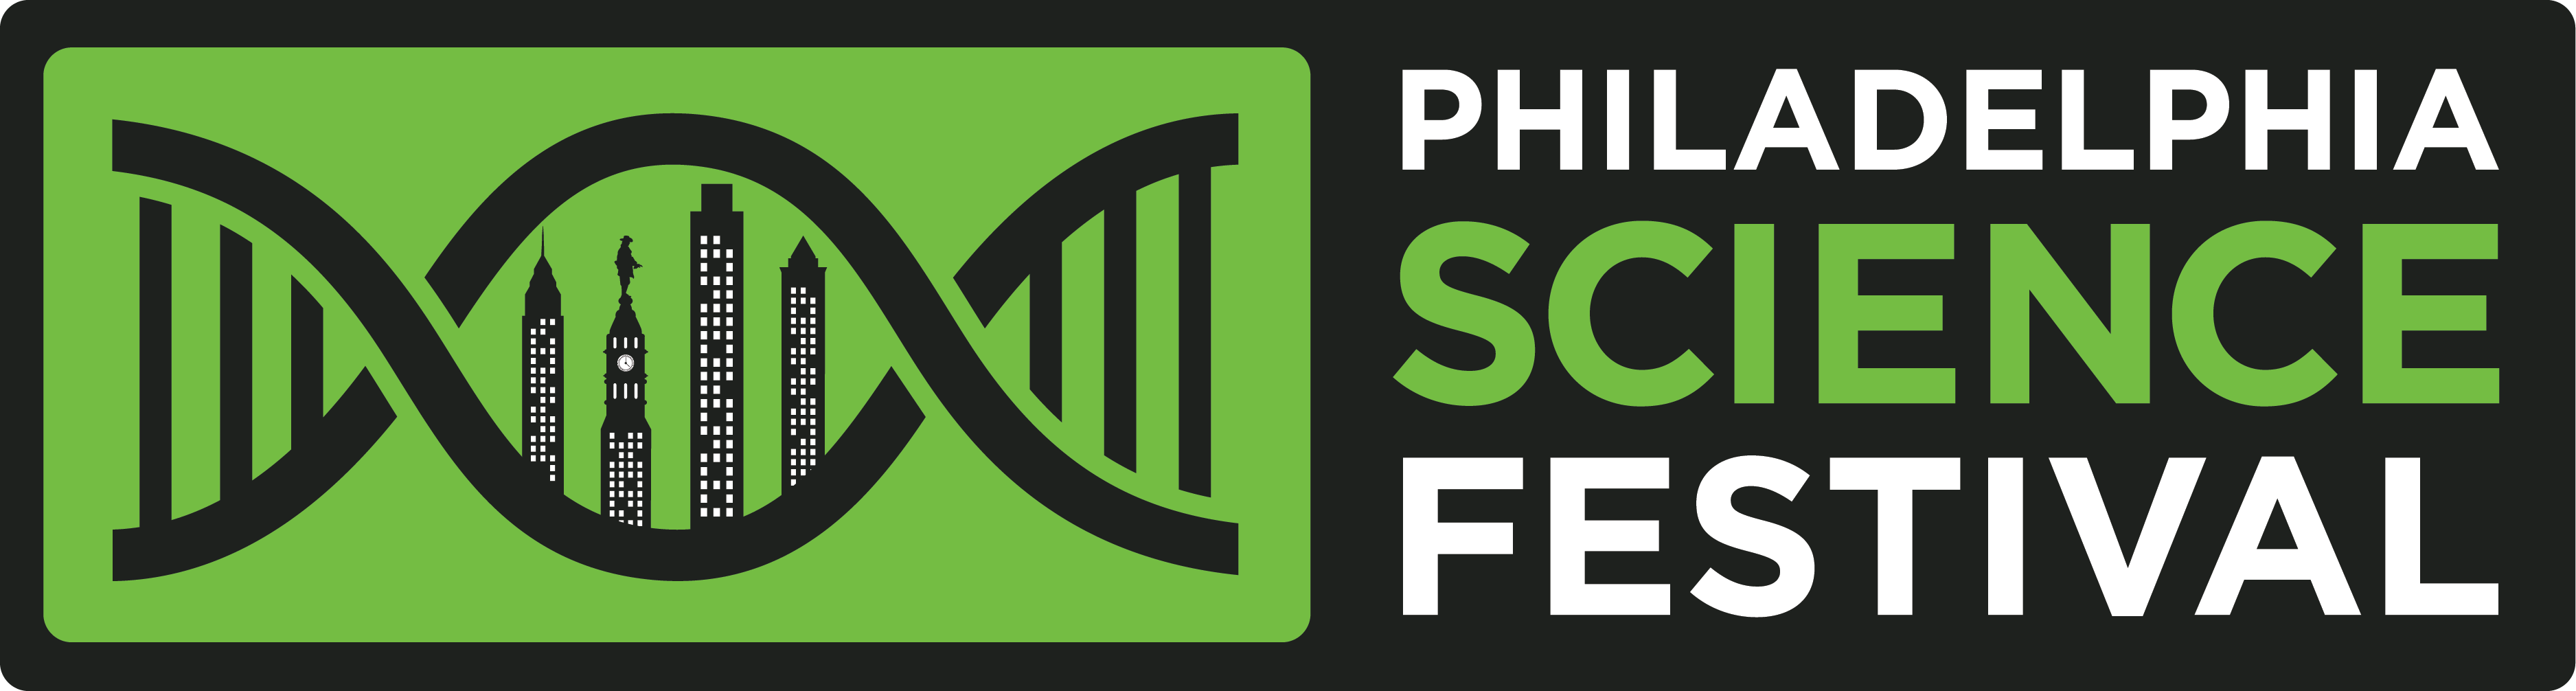 Philadelphia Science Festival | The Franklin Institute